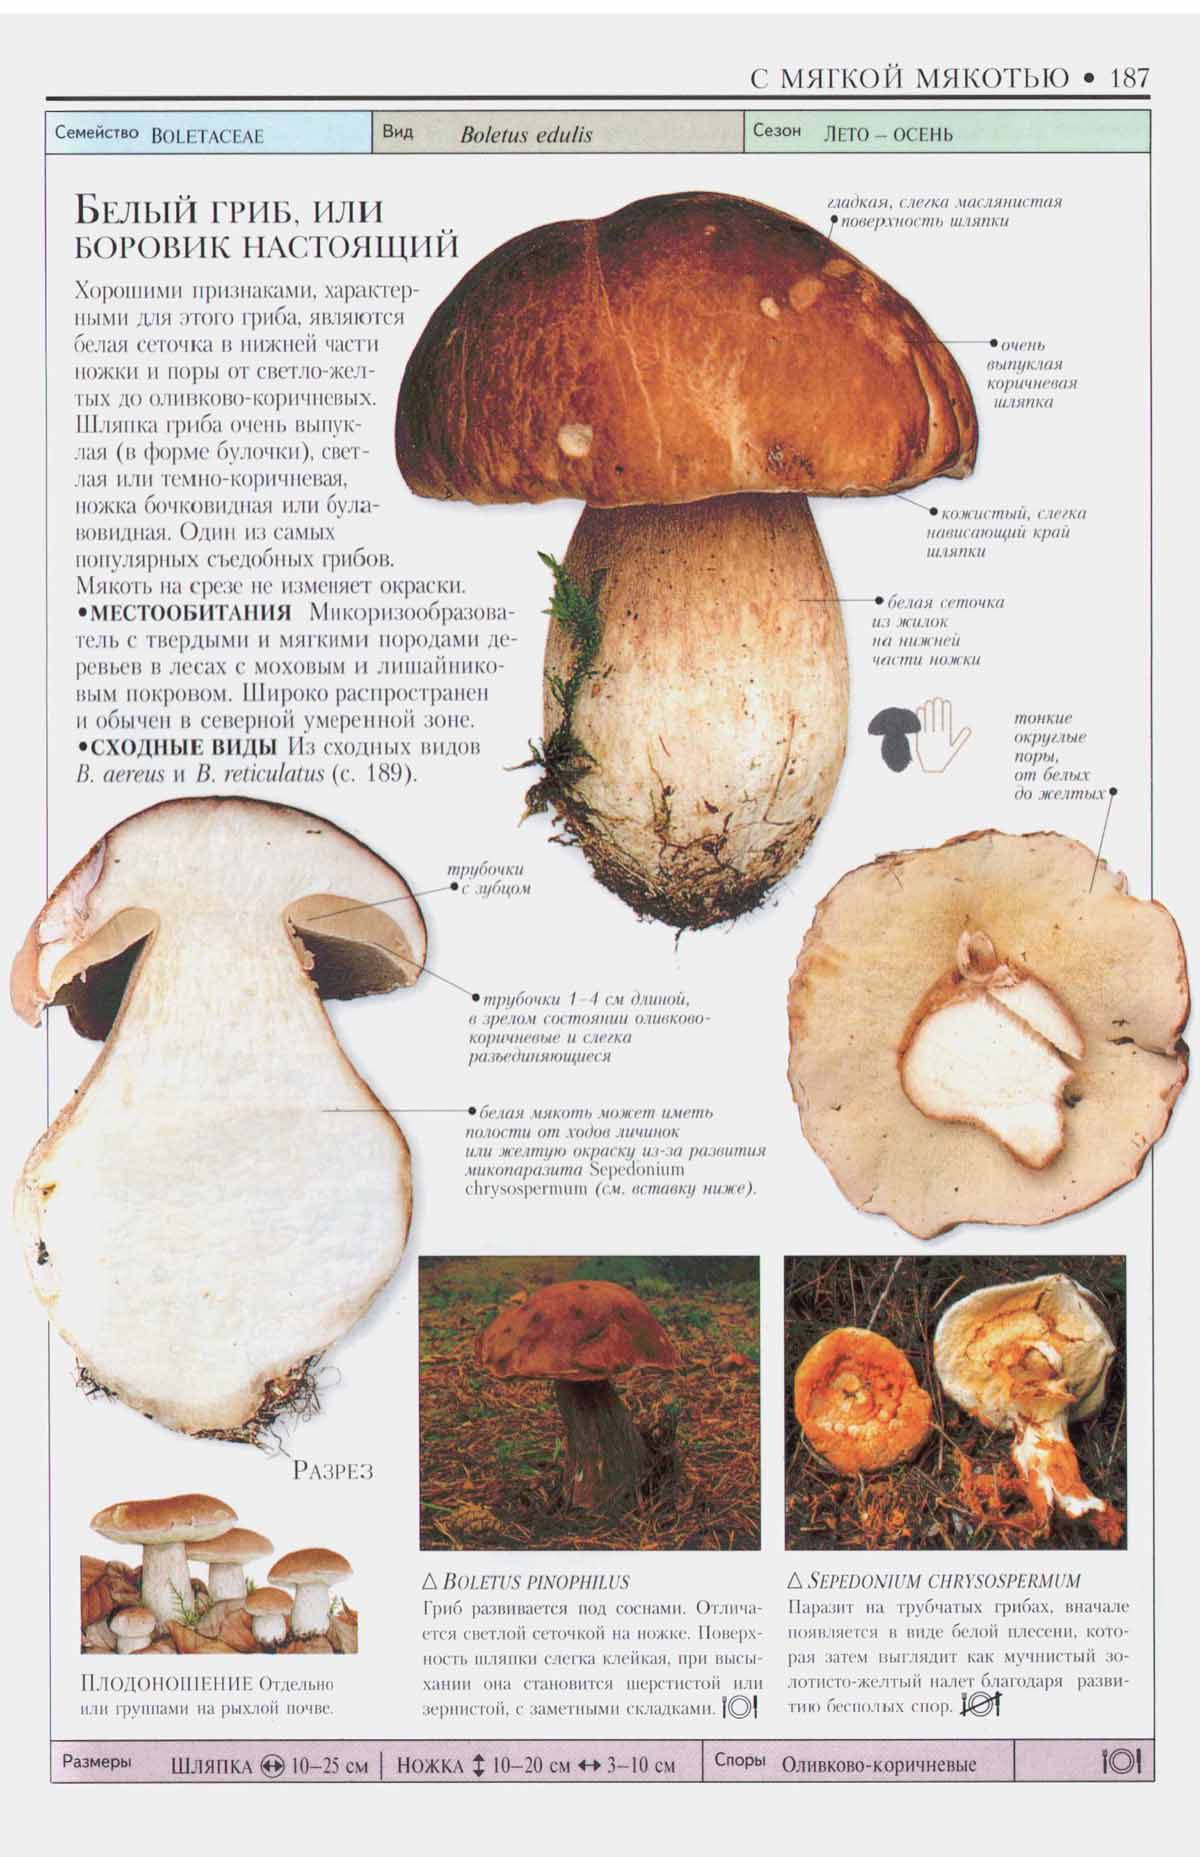 Картинки съедобных грибов с описанием